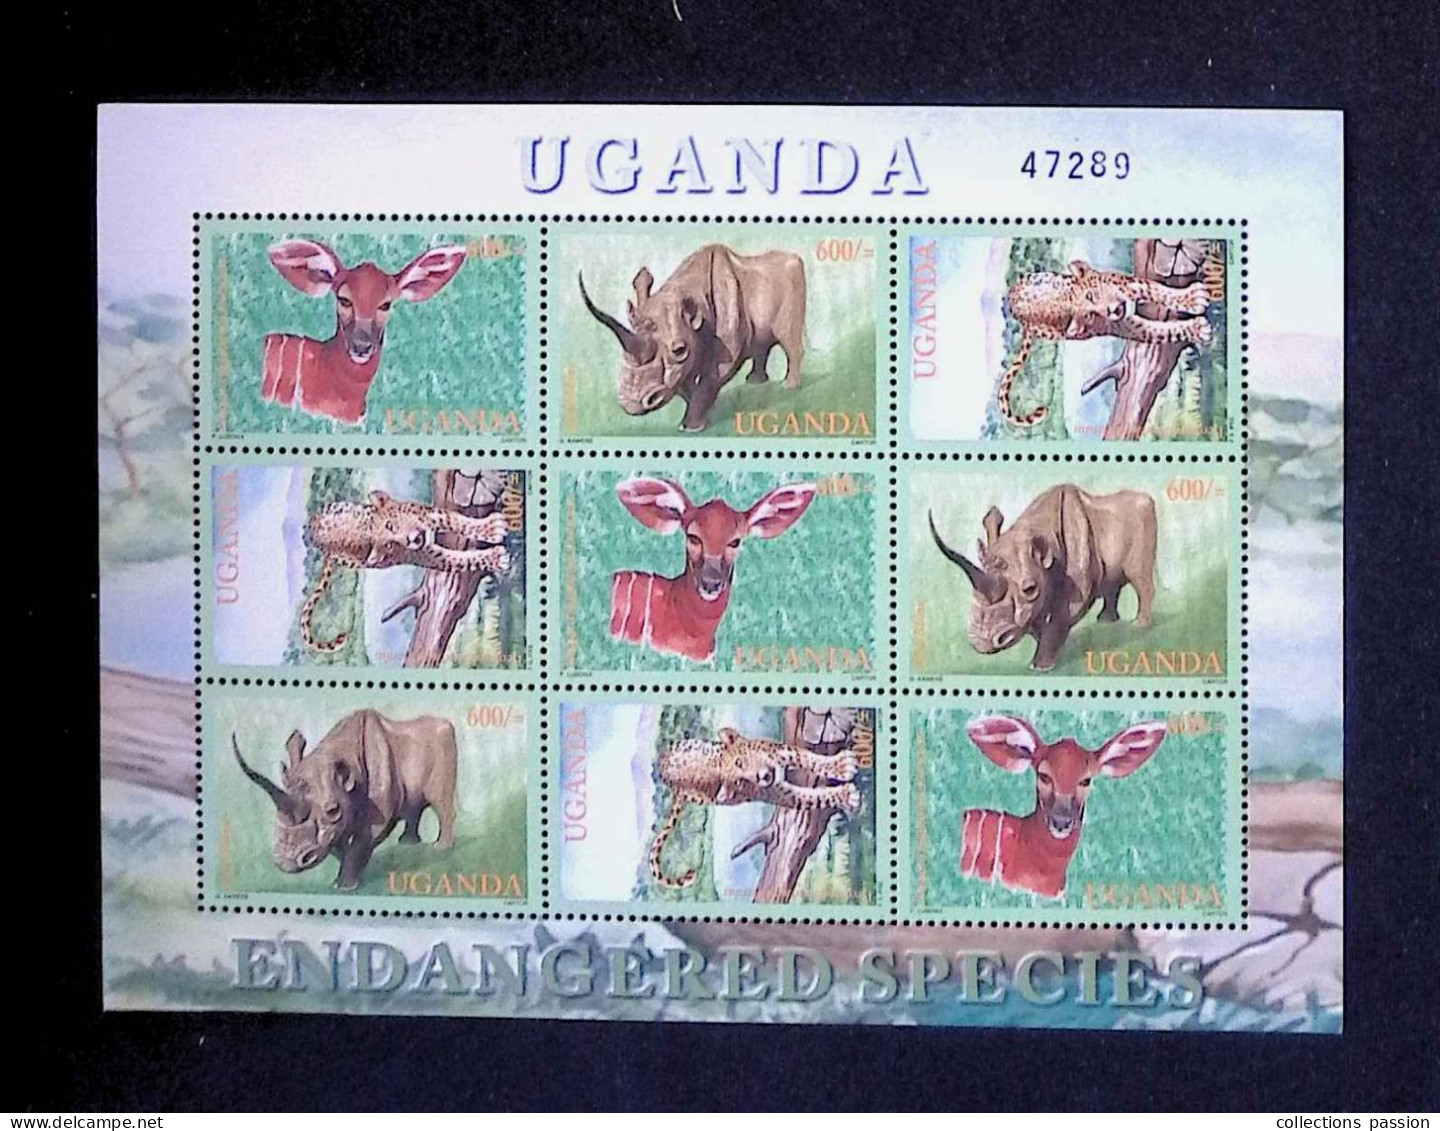 CL, Block, Bloc De 9 Timbres Neufs, 1990, Uganda, Ouganda, Endangered Species, Feuillet 47289, Frais Fr 1.75 E - Ouganda (1962-...)